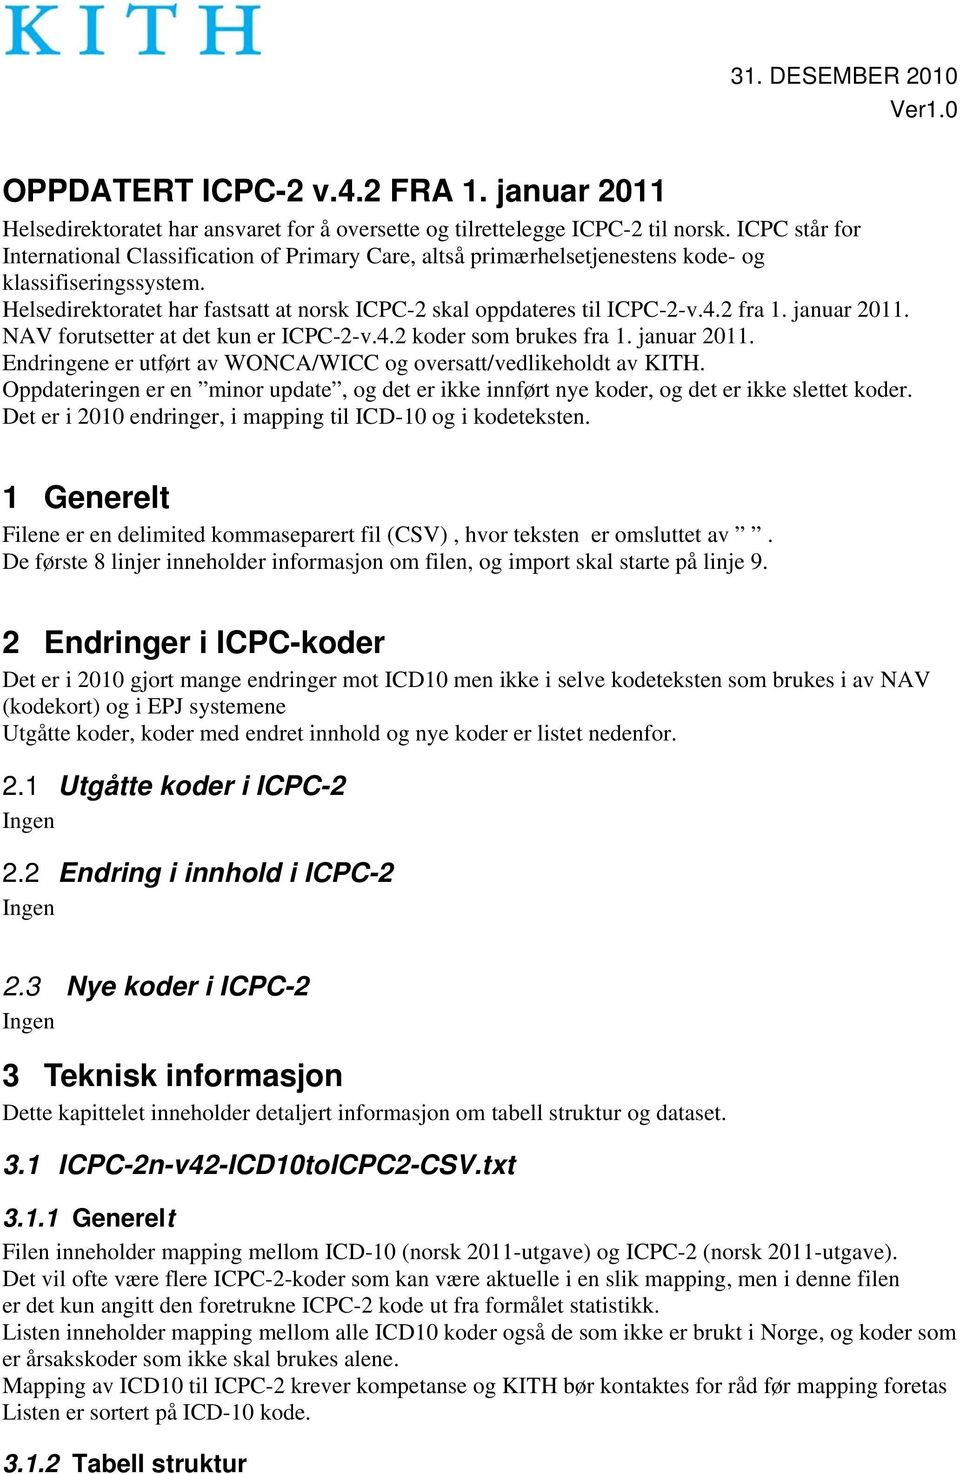 2 fra 1. januar 2011. NAV forutsetter at det kun er ICPC-2-v.4.2 koder som brukes fra 1. januar 2011. Endringene er utført av WONCA/WICC og oversatt/vedlikeholdt av KITH.